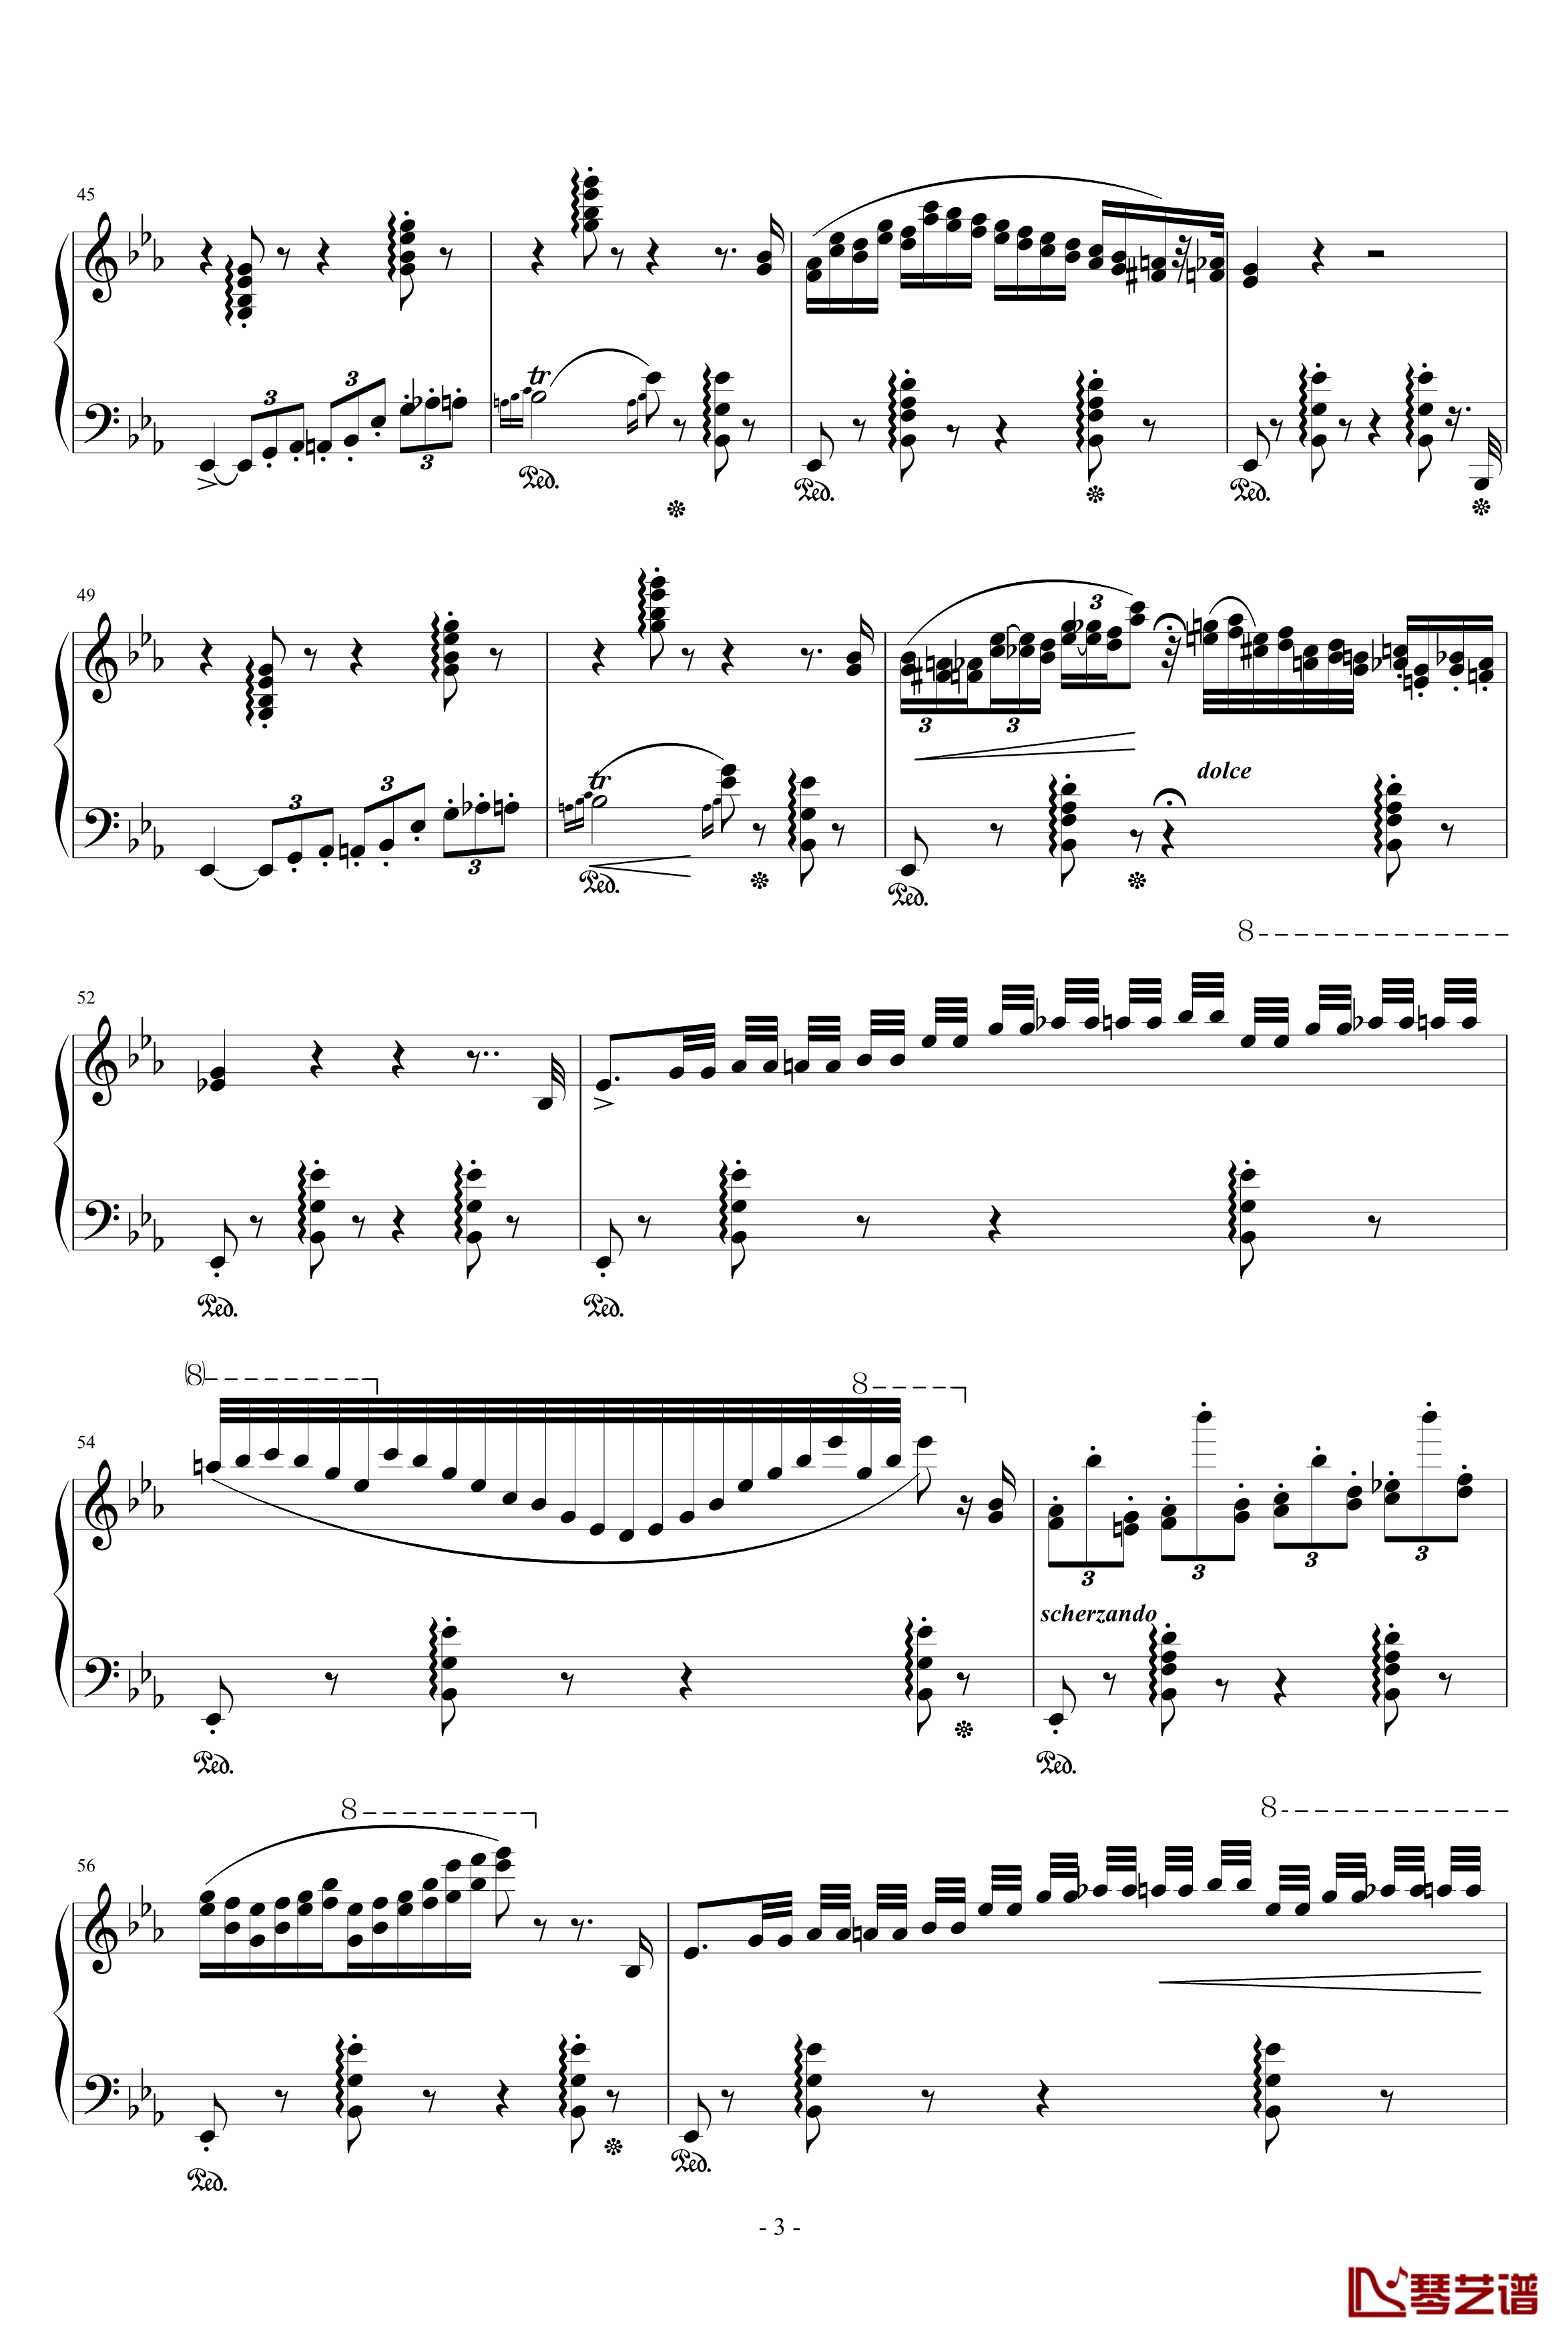 匈牙利狂想曲第9号钢琴谱-19首匈狂里篇幅最浩大、技巧最艰深的作品之一-李斯特3